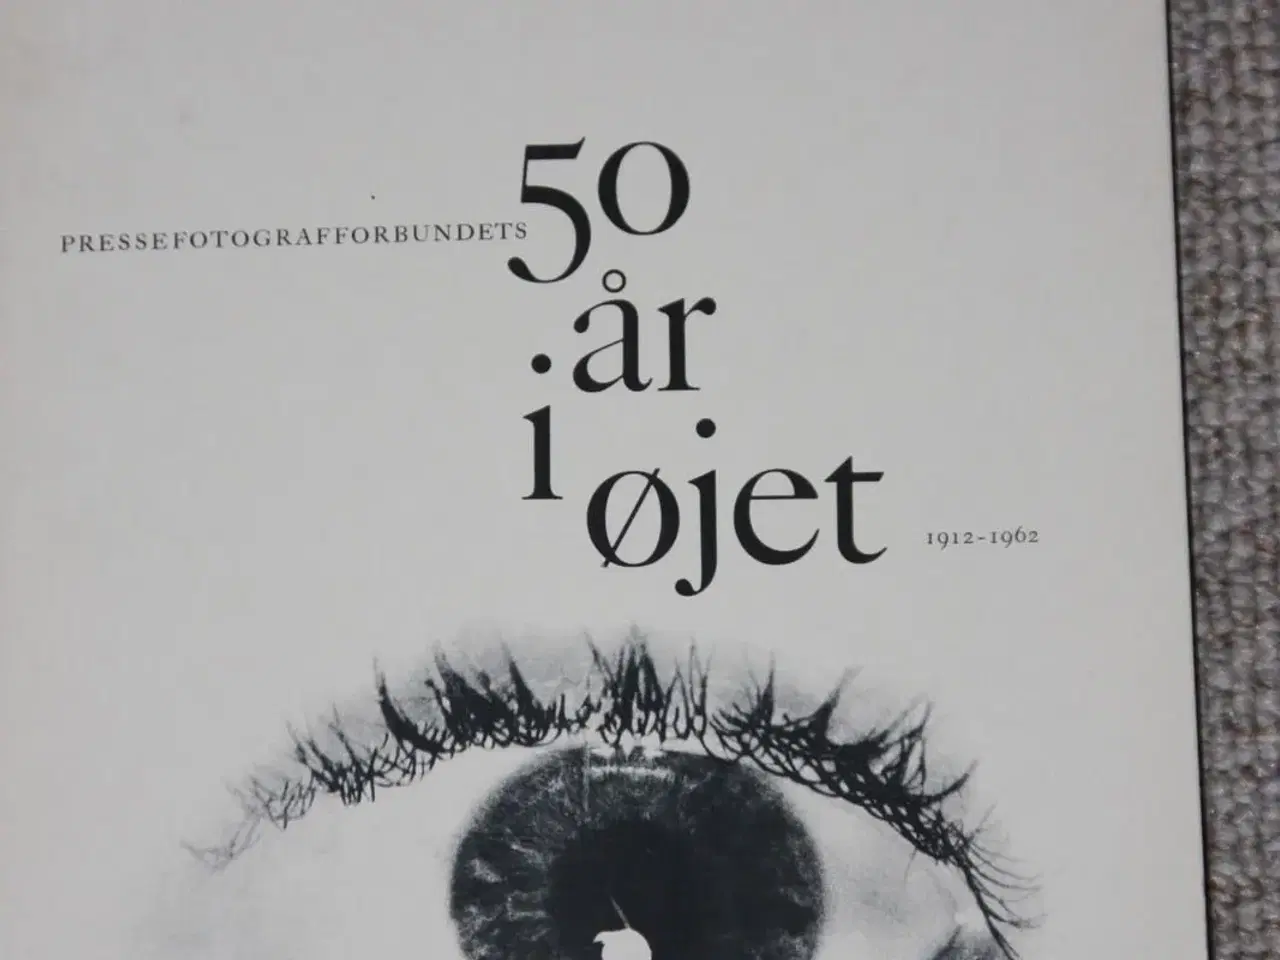 Billede 2 - 50 år i øjet Pressefotografforbundet